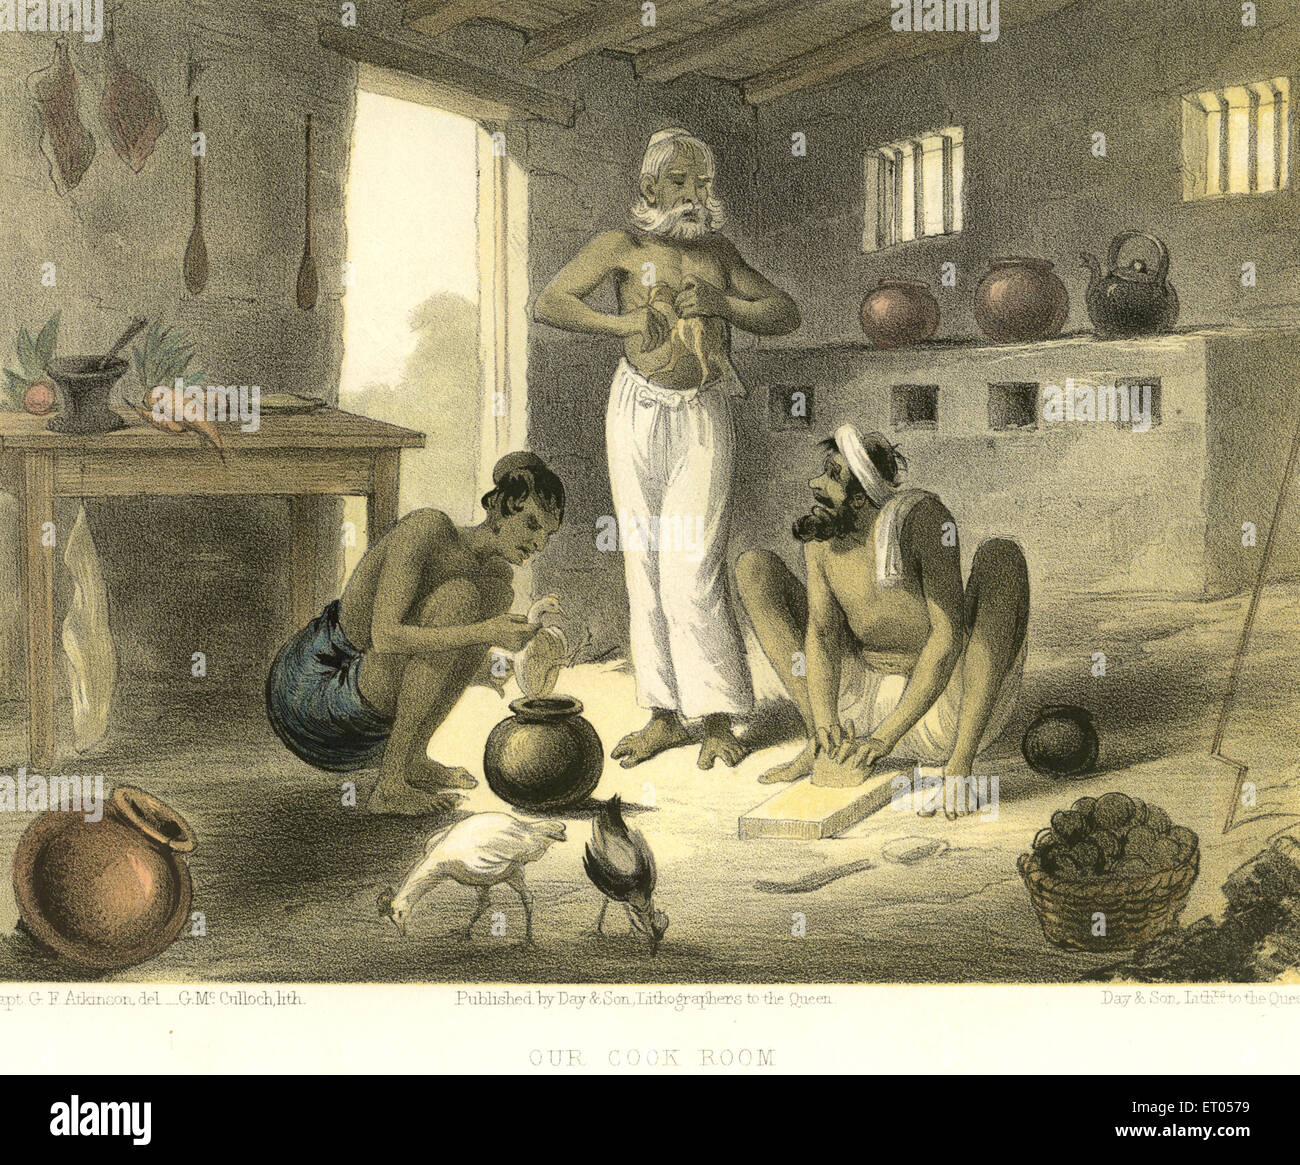 Imágenes indio colonial ; nuestra habitación cook ; India Foto de stock